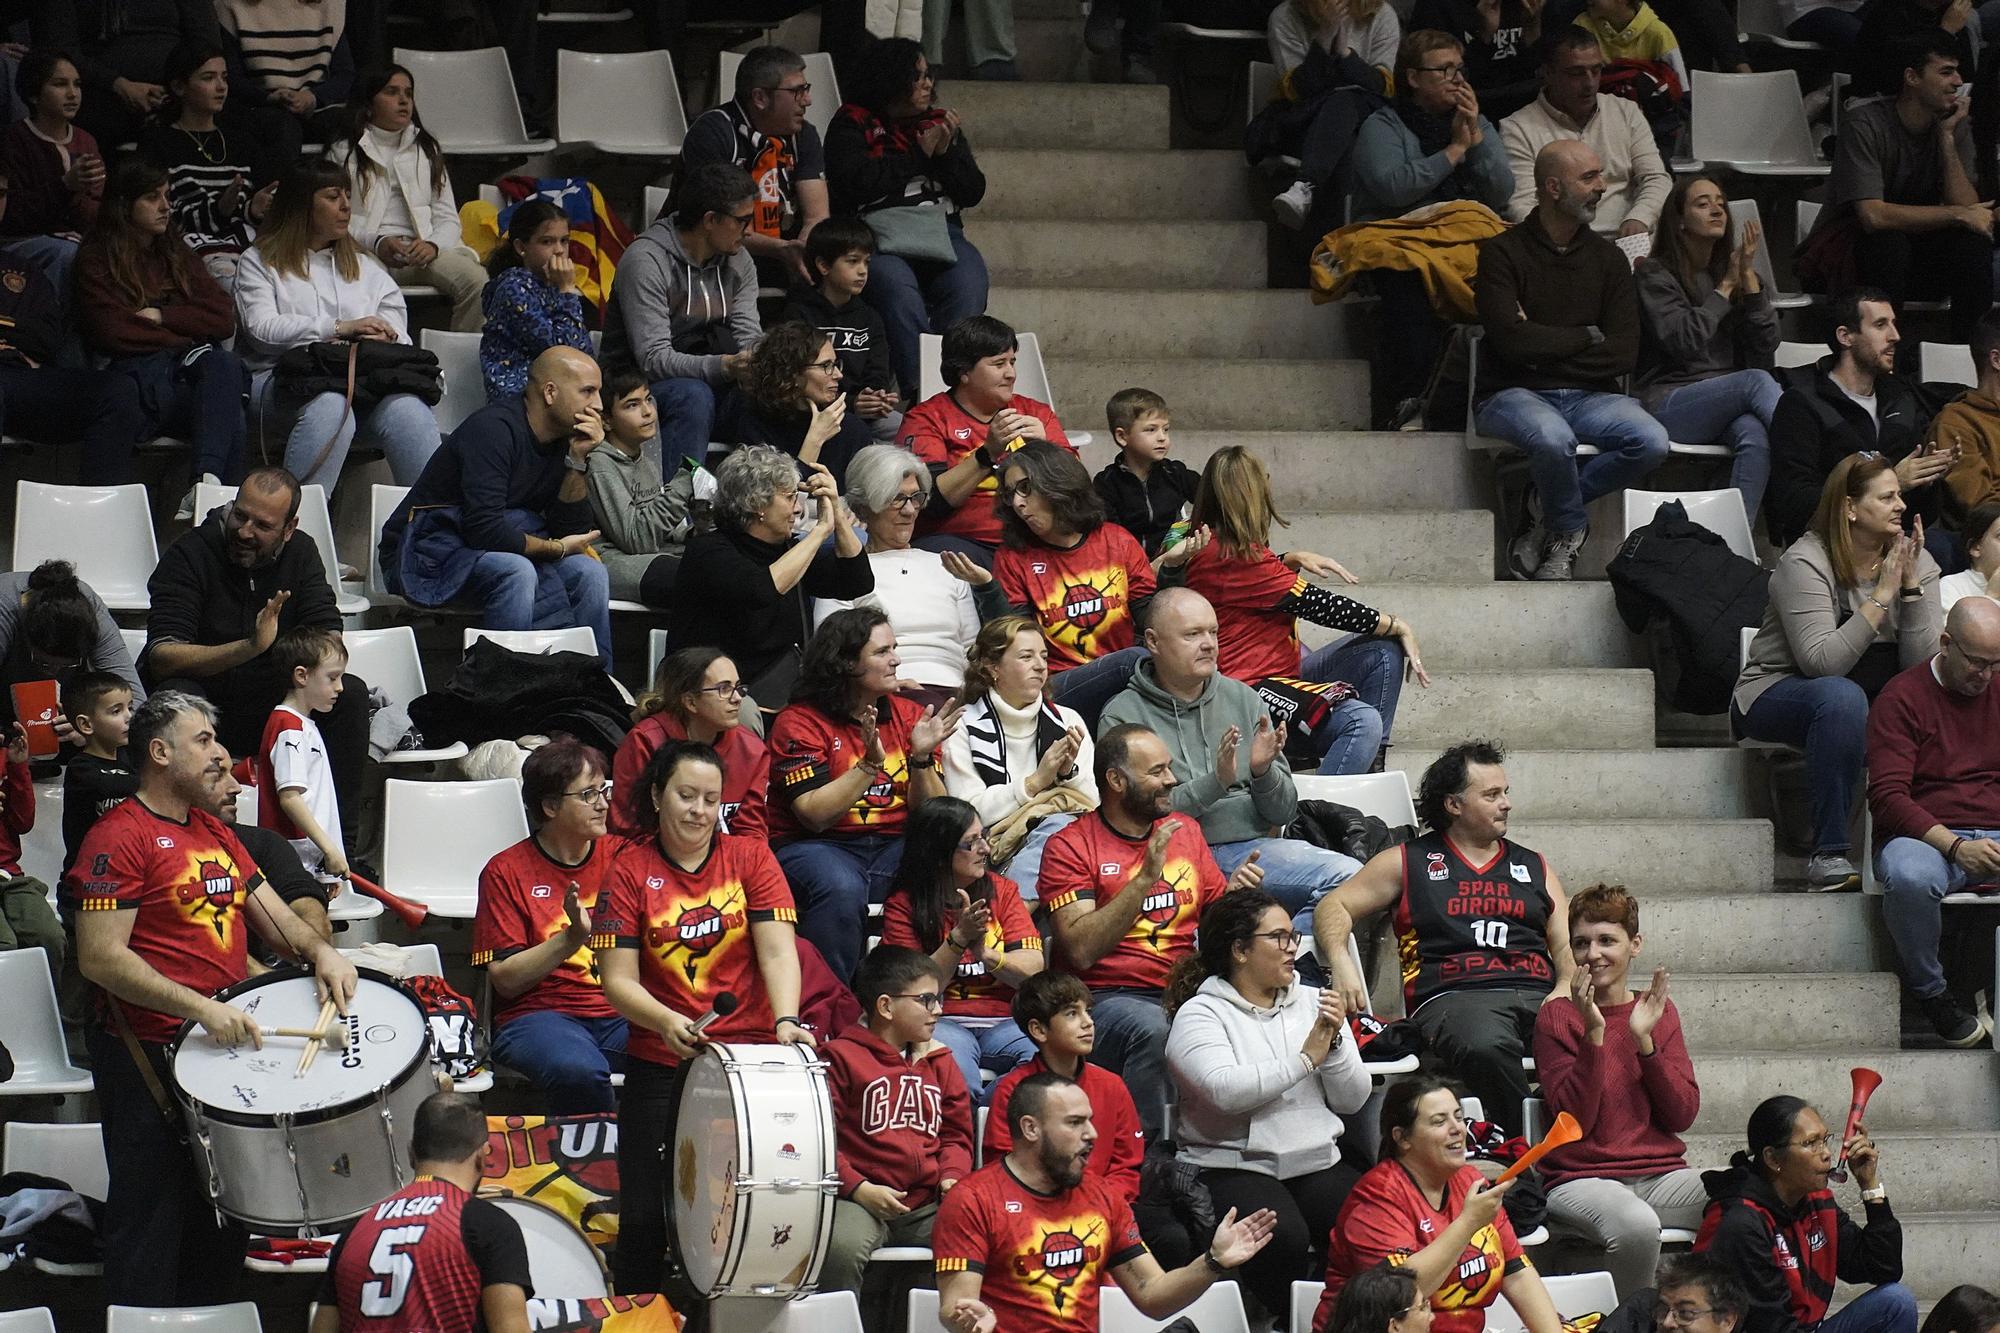 Les imatges del Spar Girona - Basket Landes